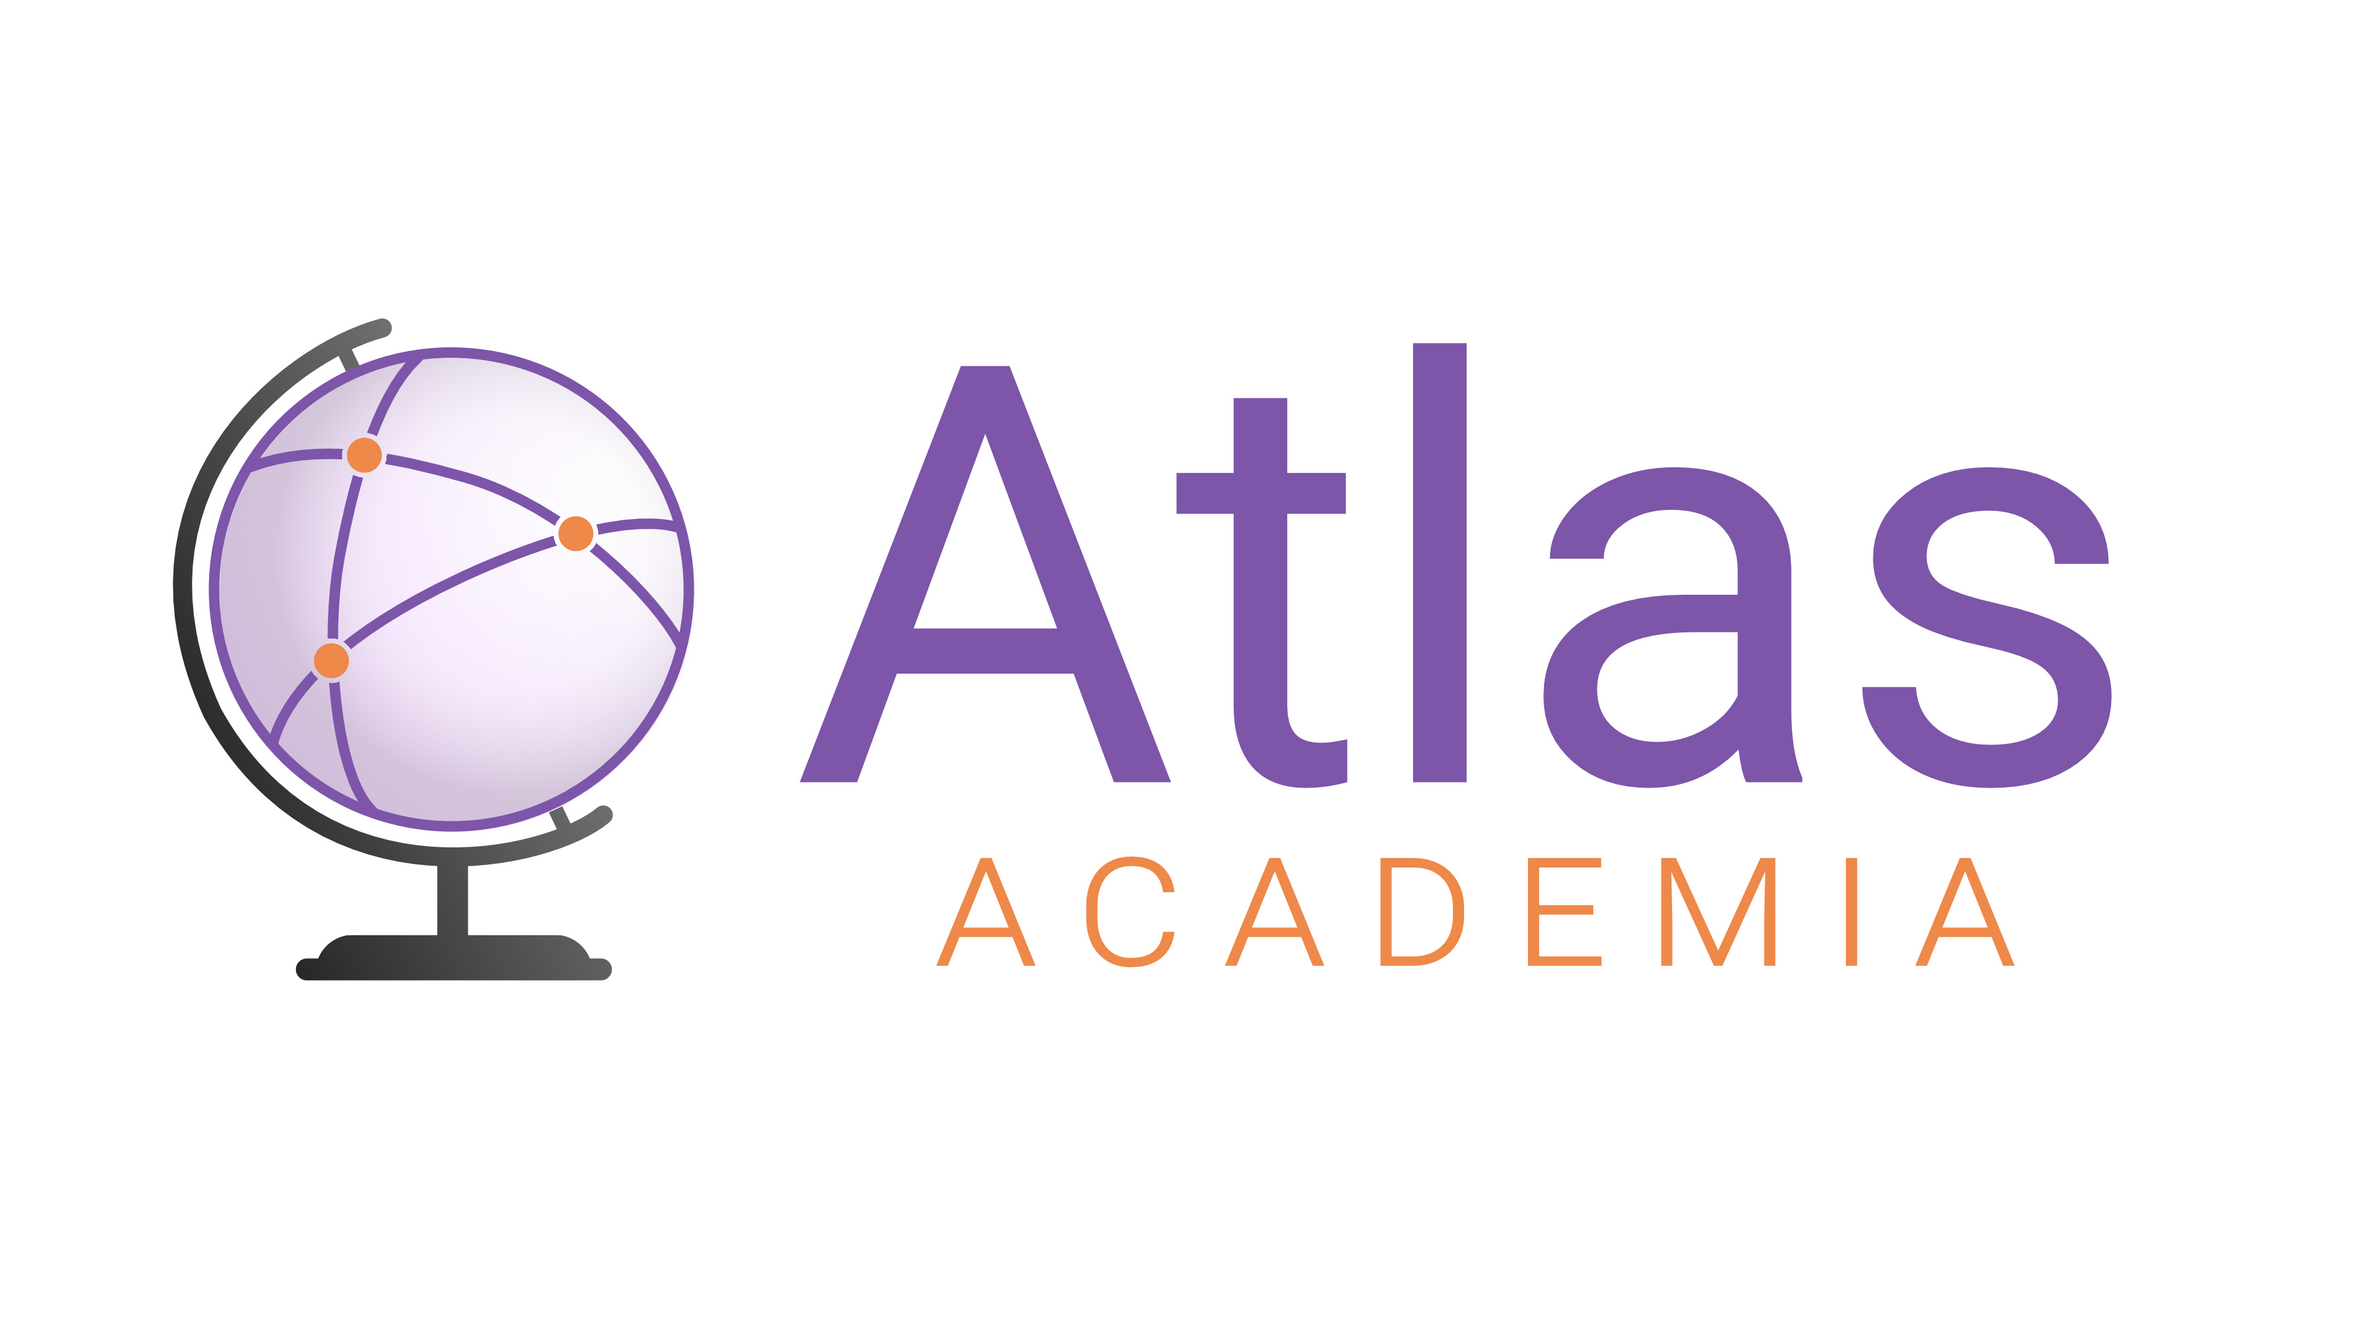 www.atlas-academia.com